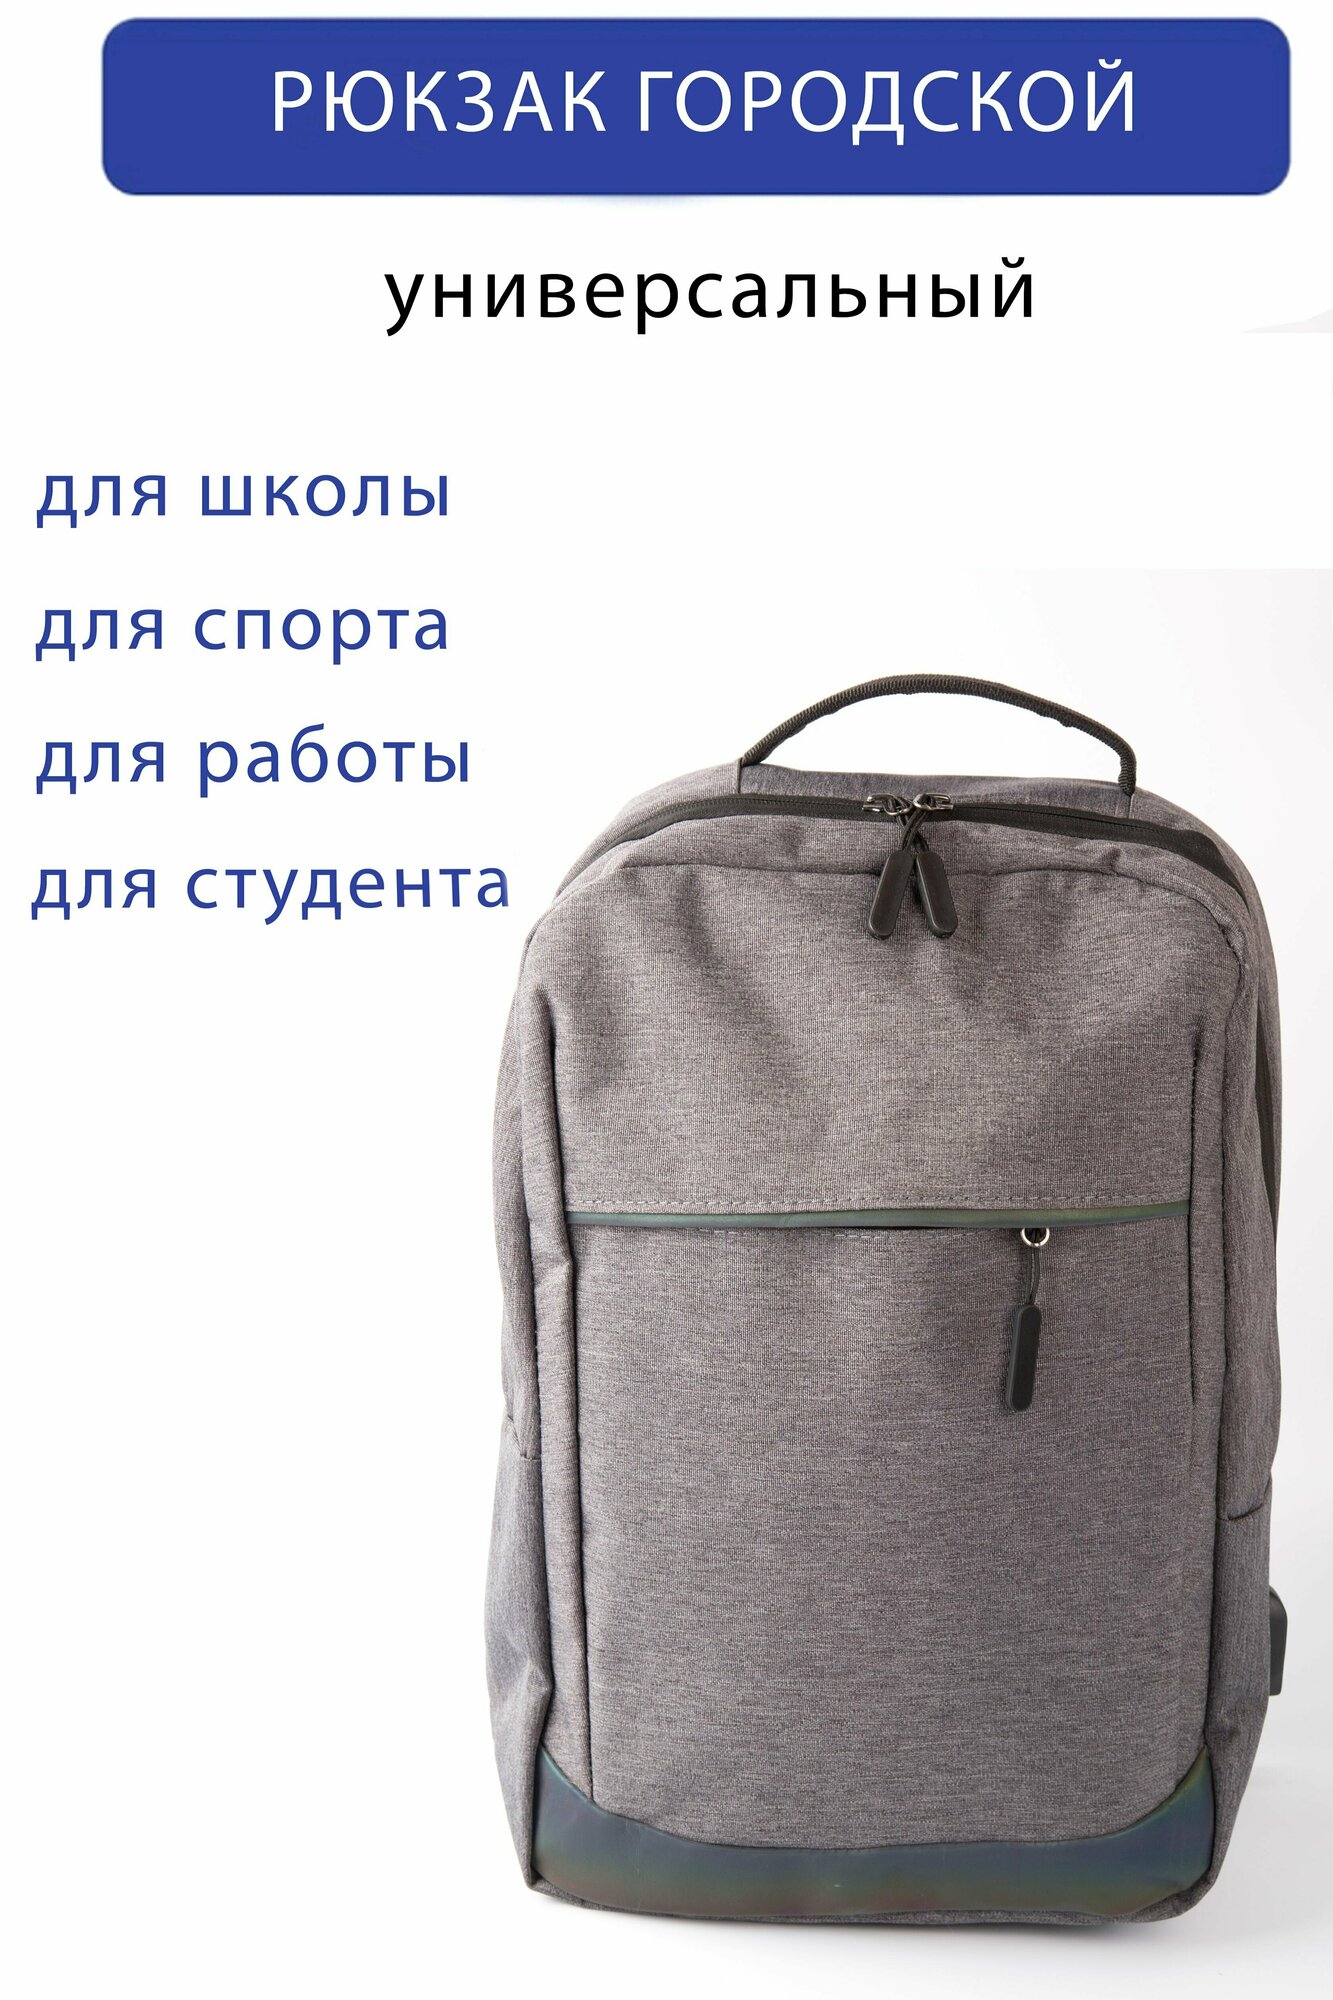 Рюкзак универсальный повседневный, серый